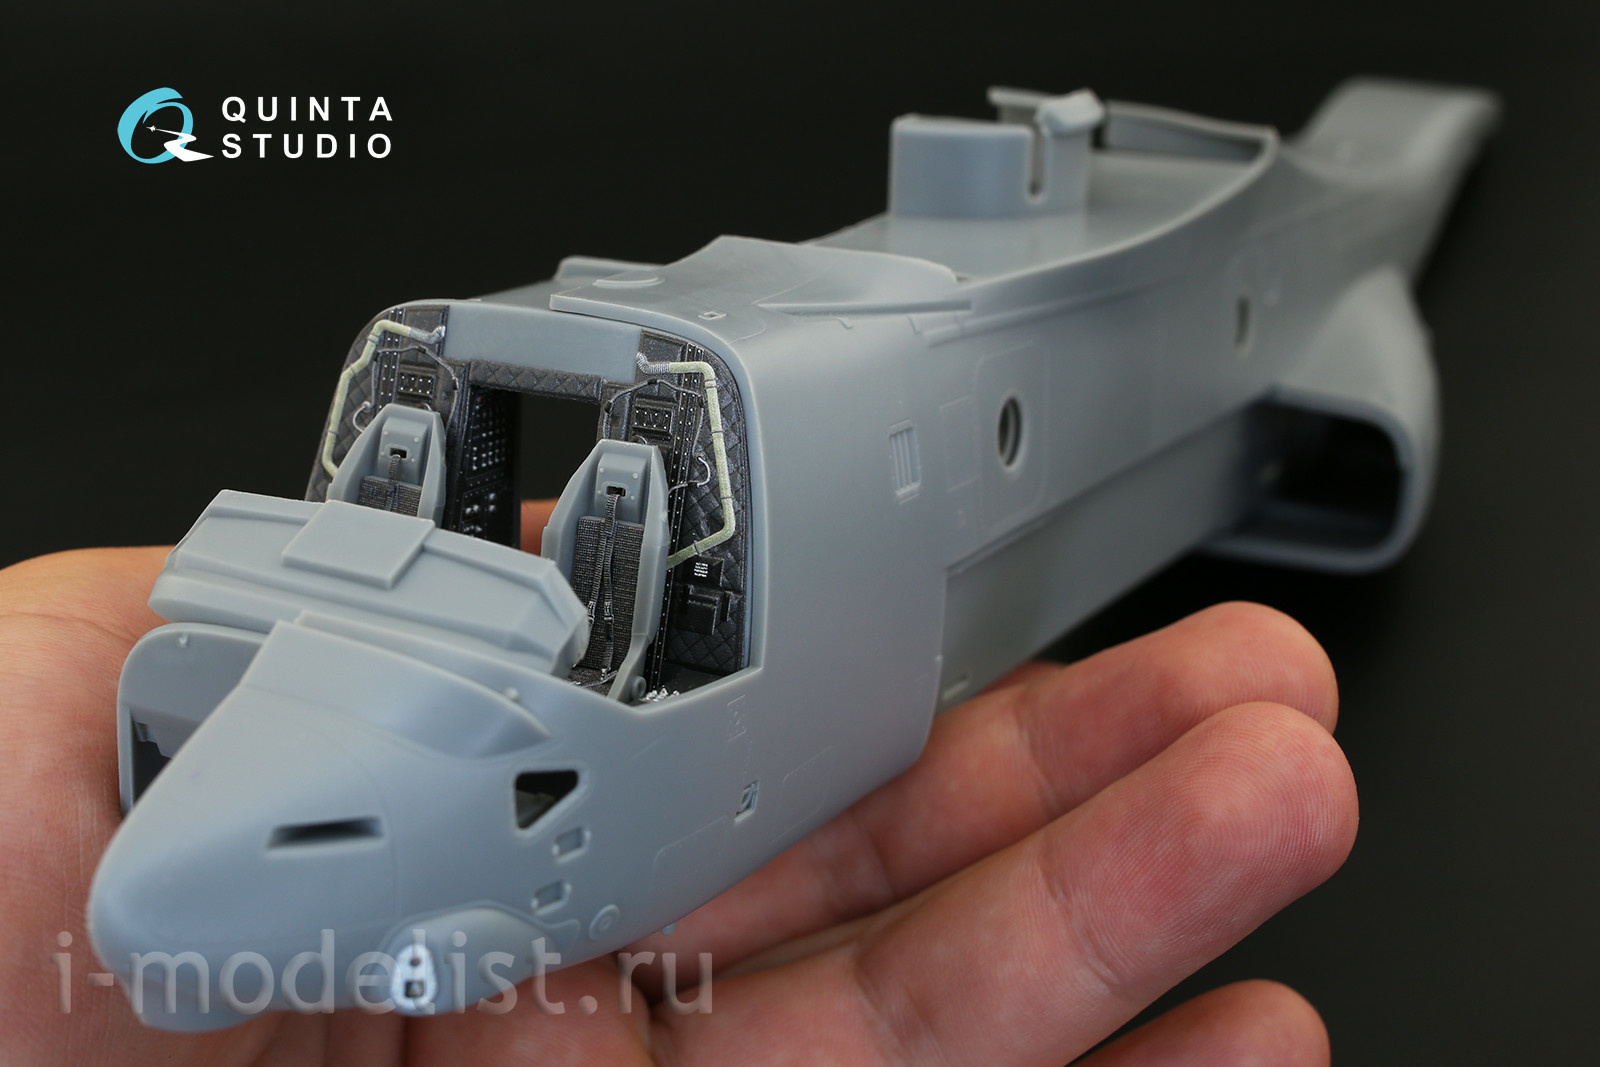 QD48182 Quinta Studio 1/48 3D Декаль интерьера кабины MV-22 Osprey (для модели HobbyBoss)